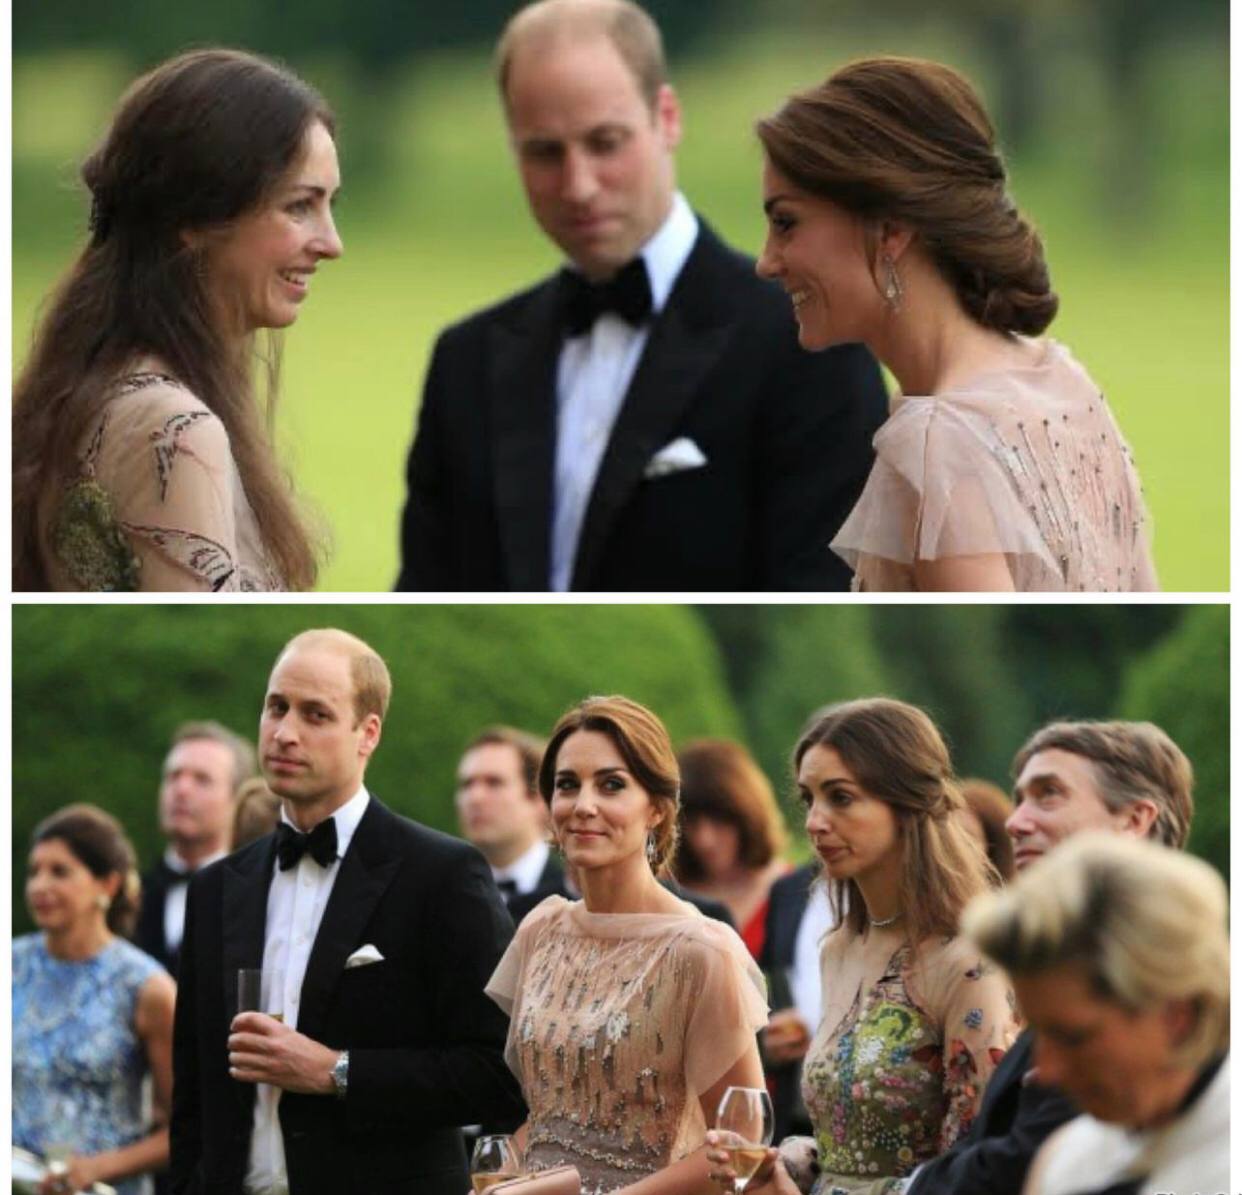 Isu Perselingkuhan Pangeran William dan Rose Hanbury Kembali Mencuat, Keberadaan Kate Middleton Dipertanyakan